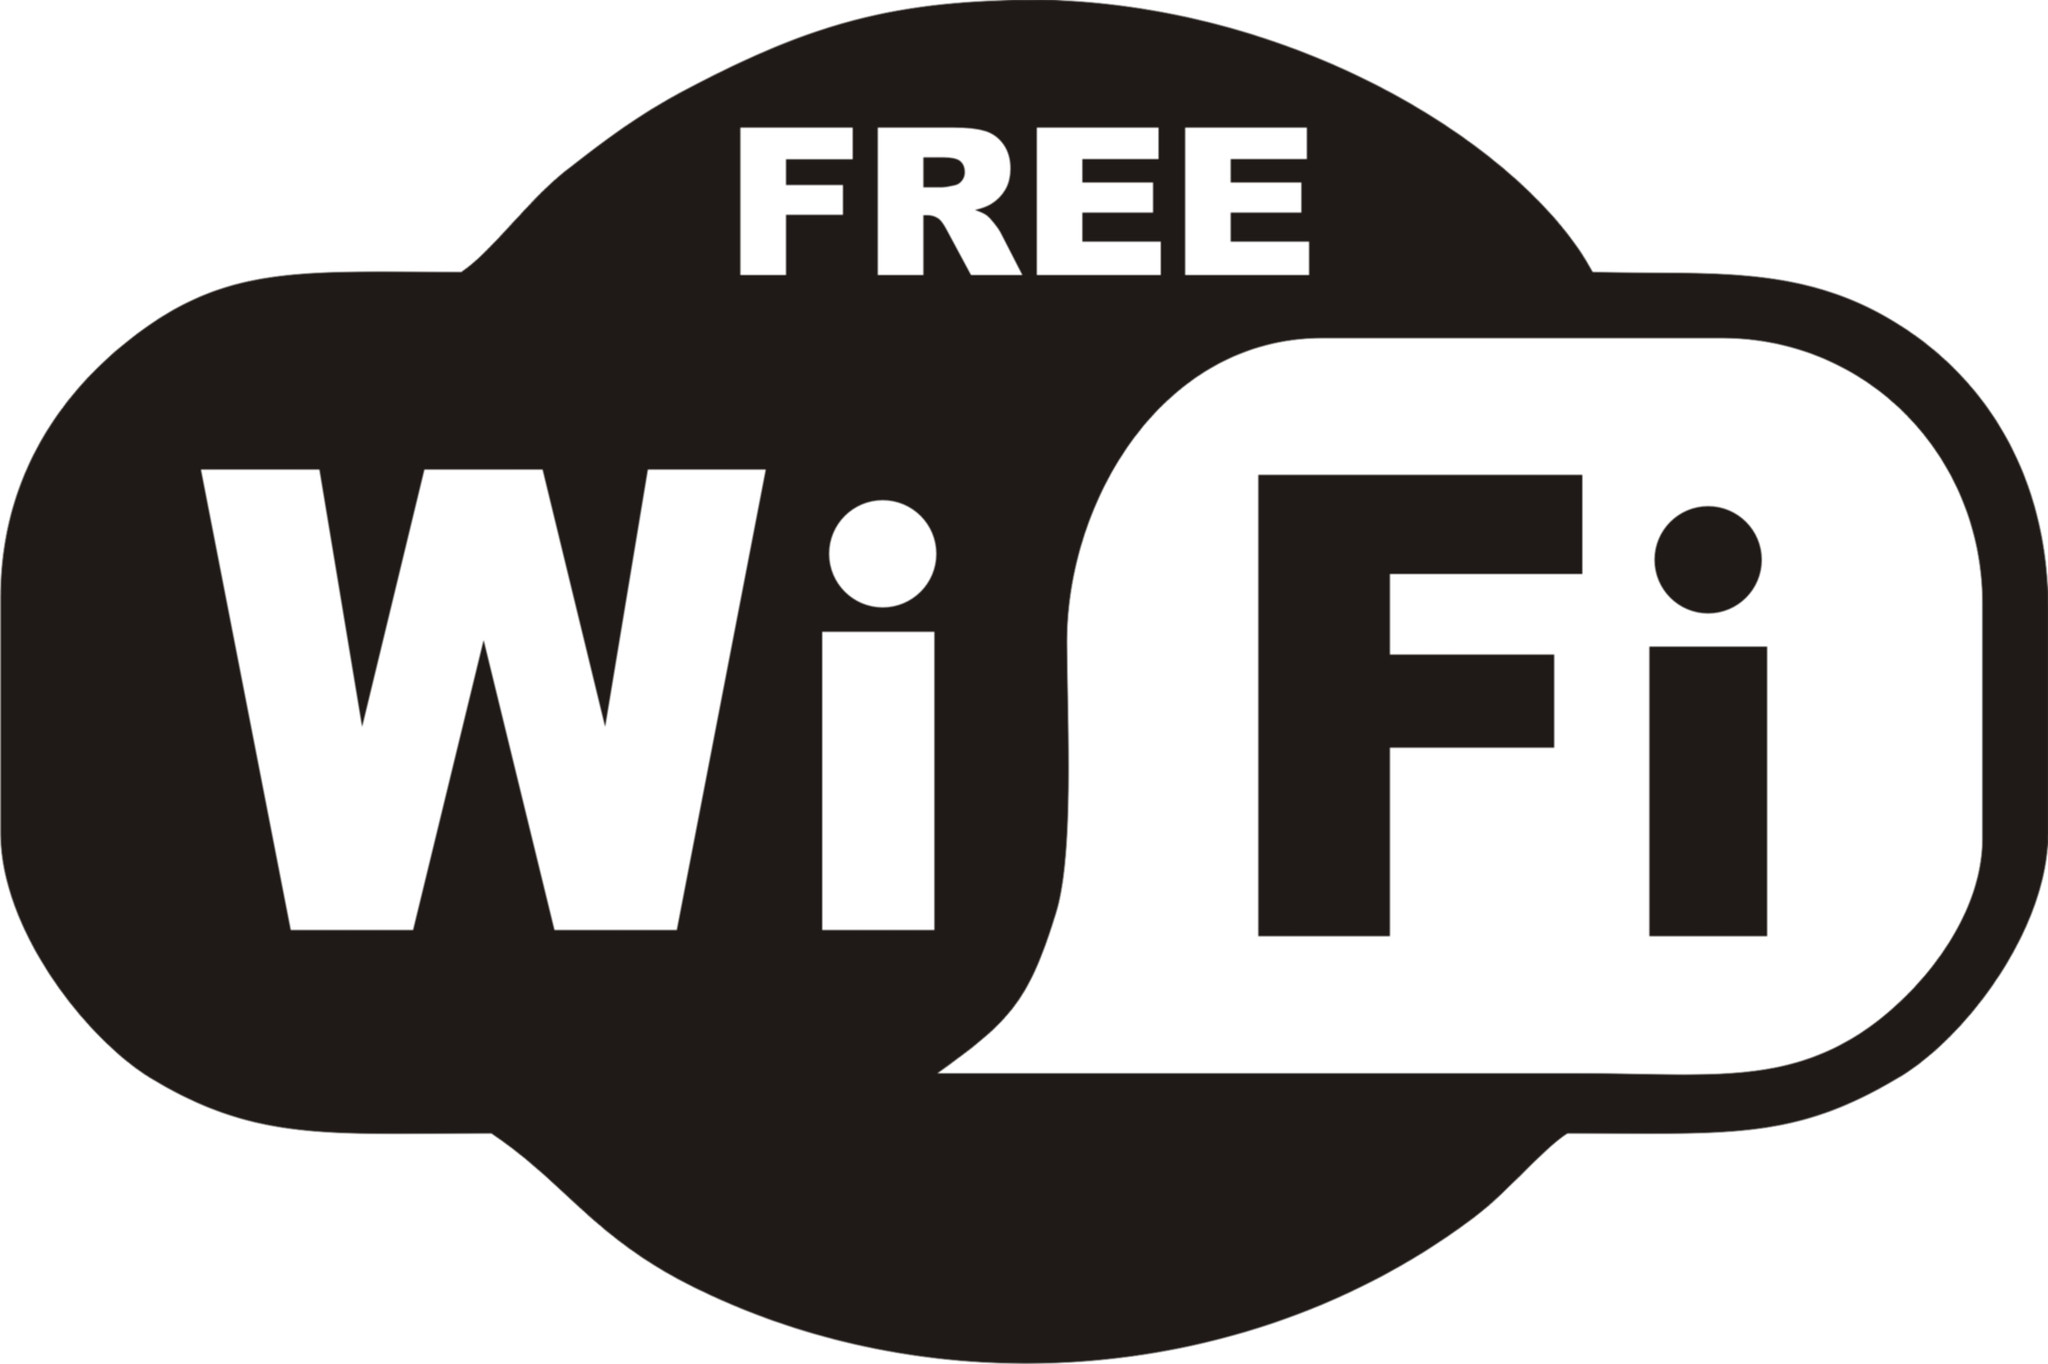 Free_WiFi